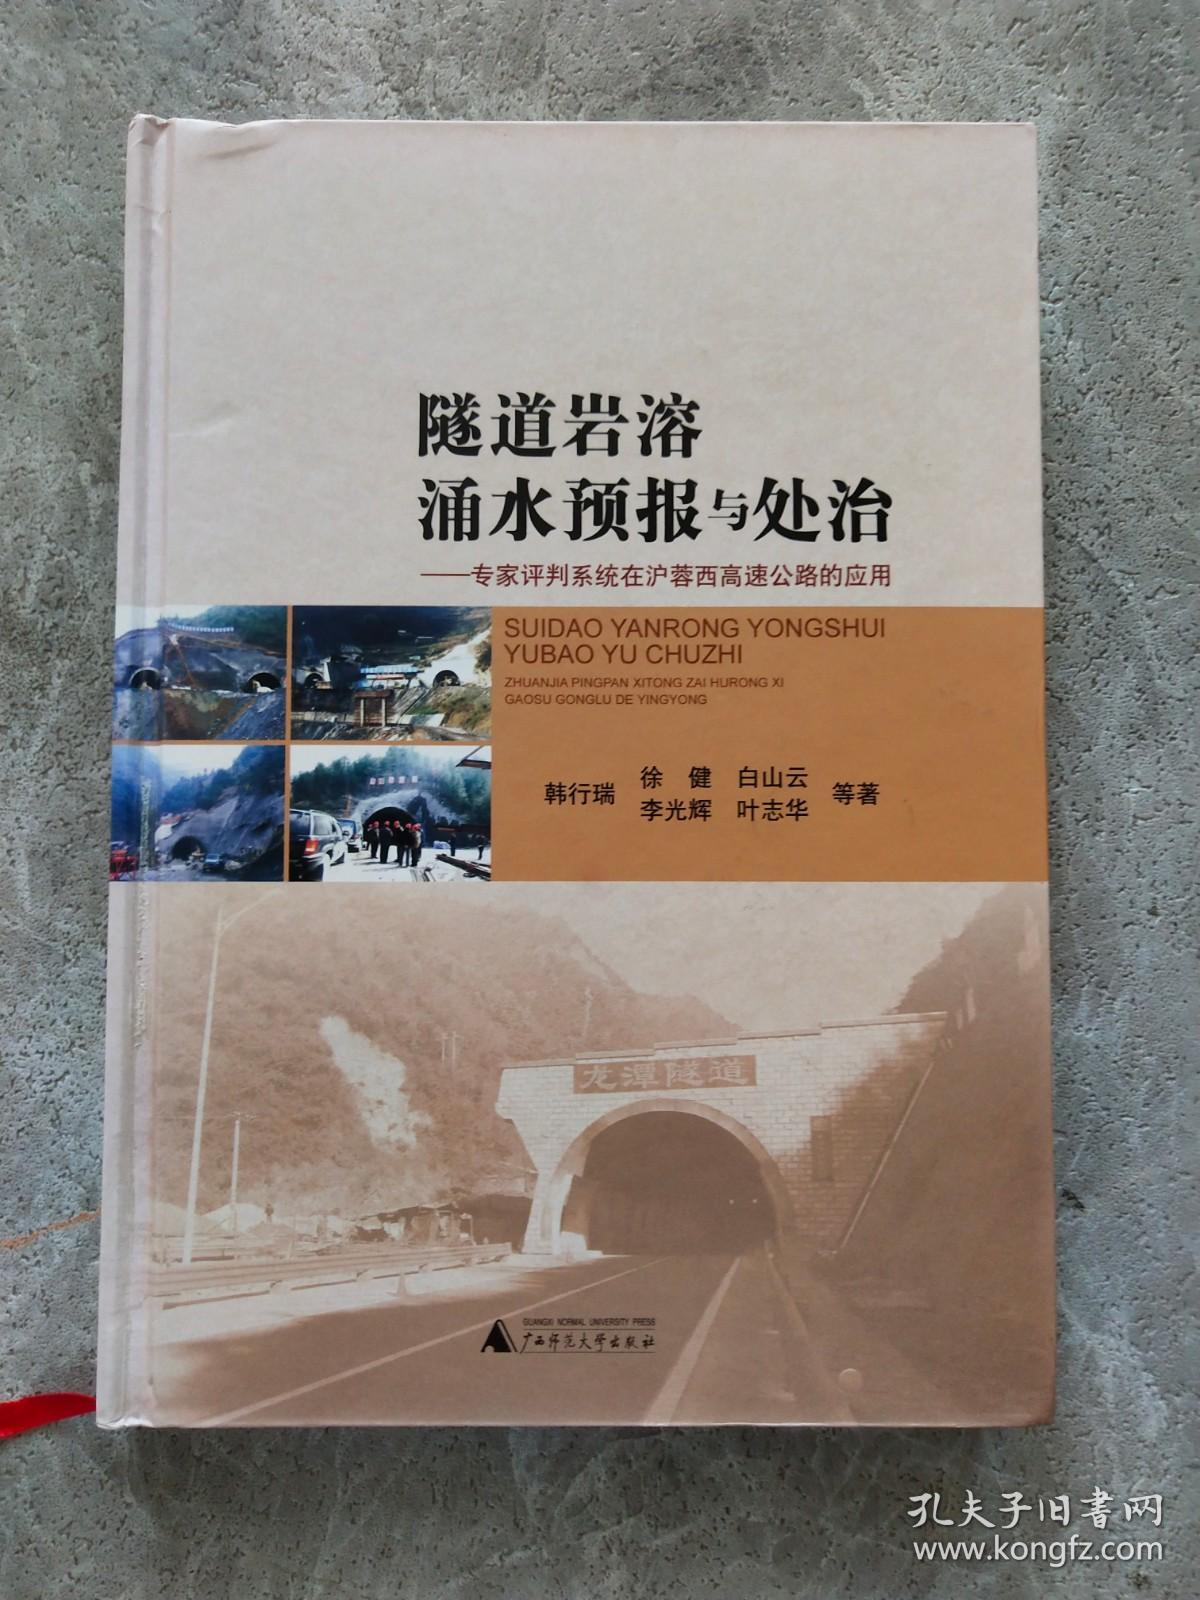 隧道岩溶涌水预报与处治 : 专家评判系统在沪蓉西 高速公路的应用